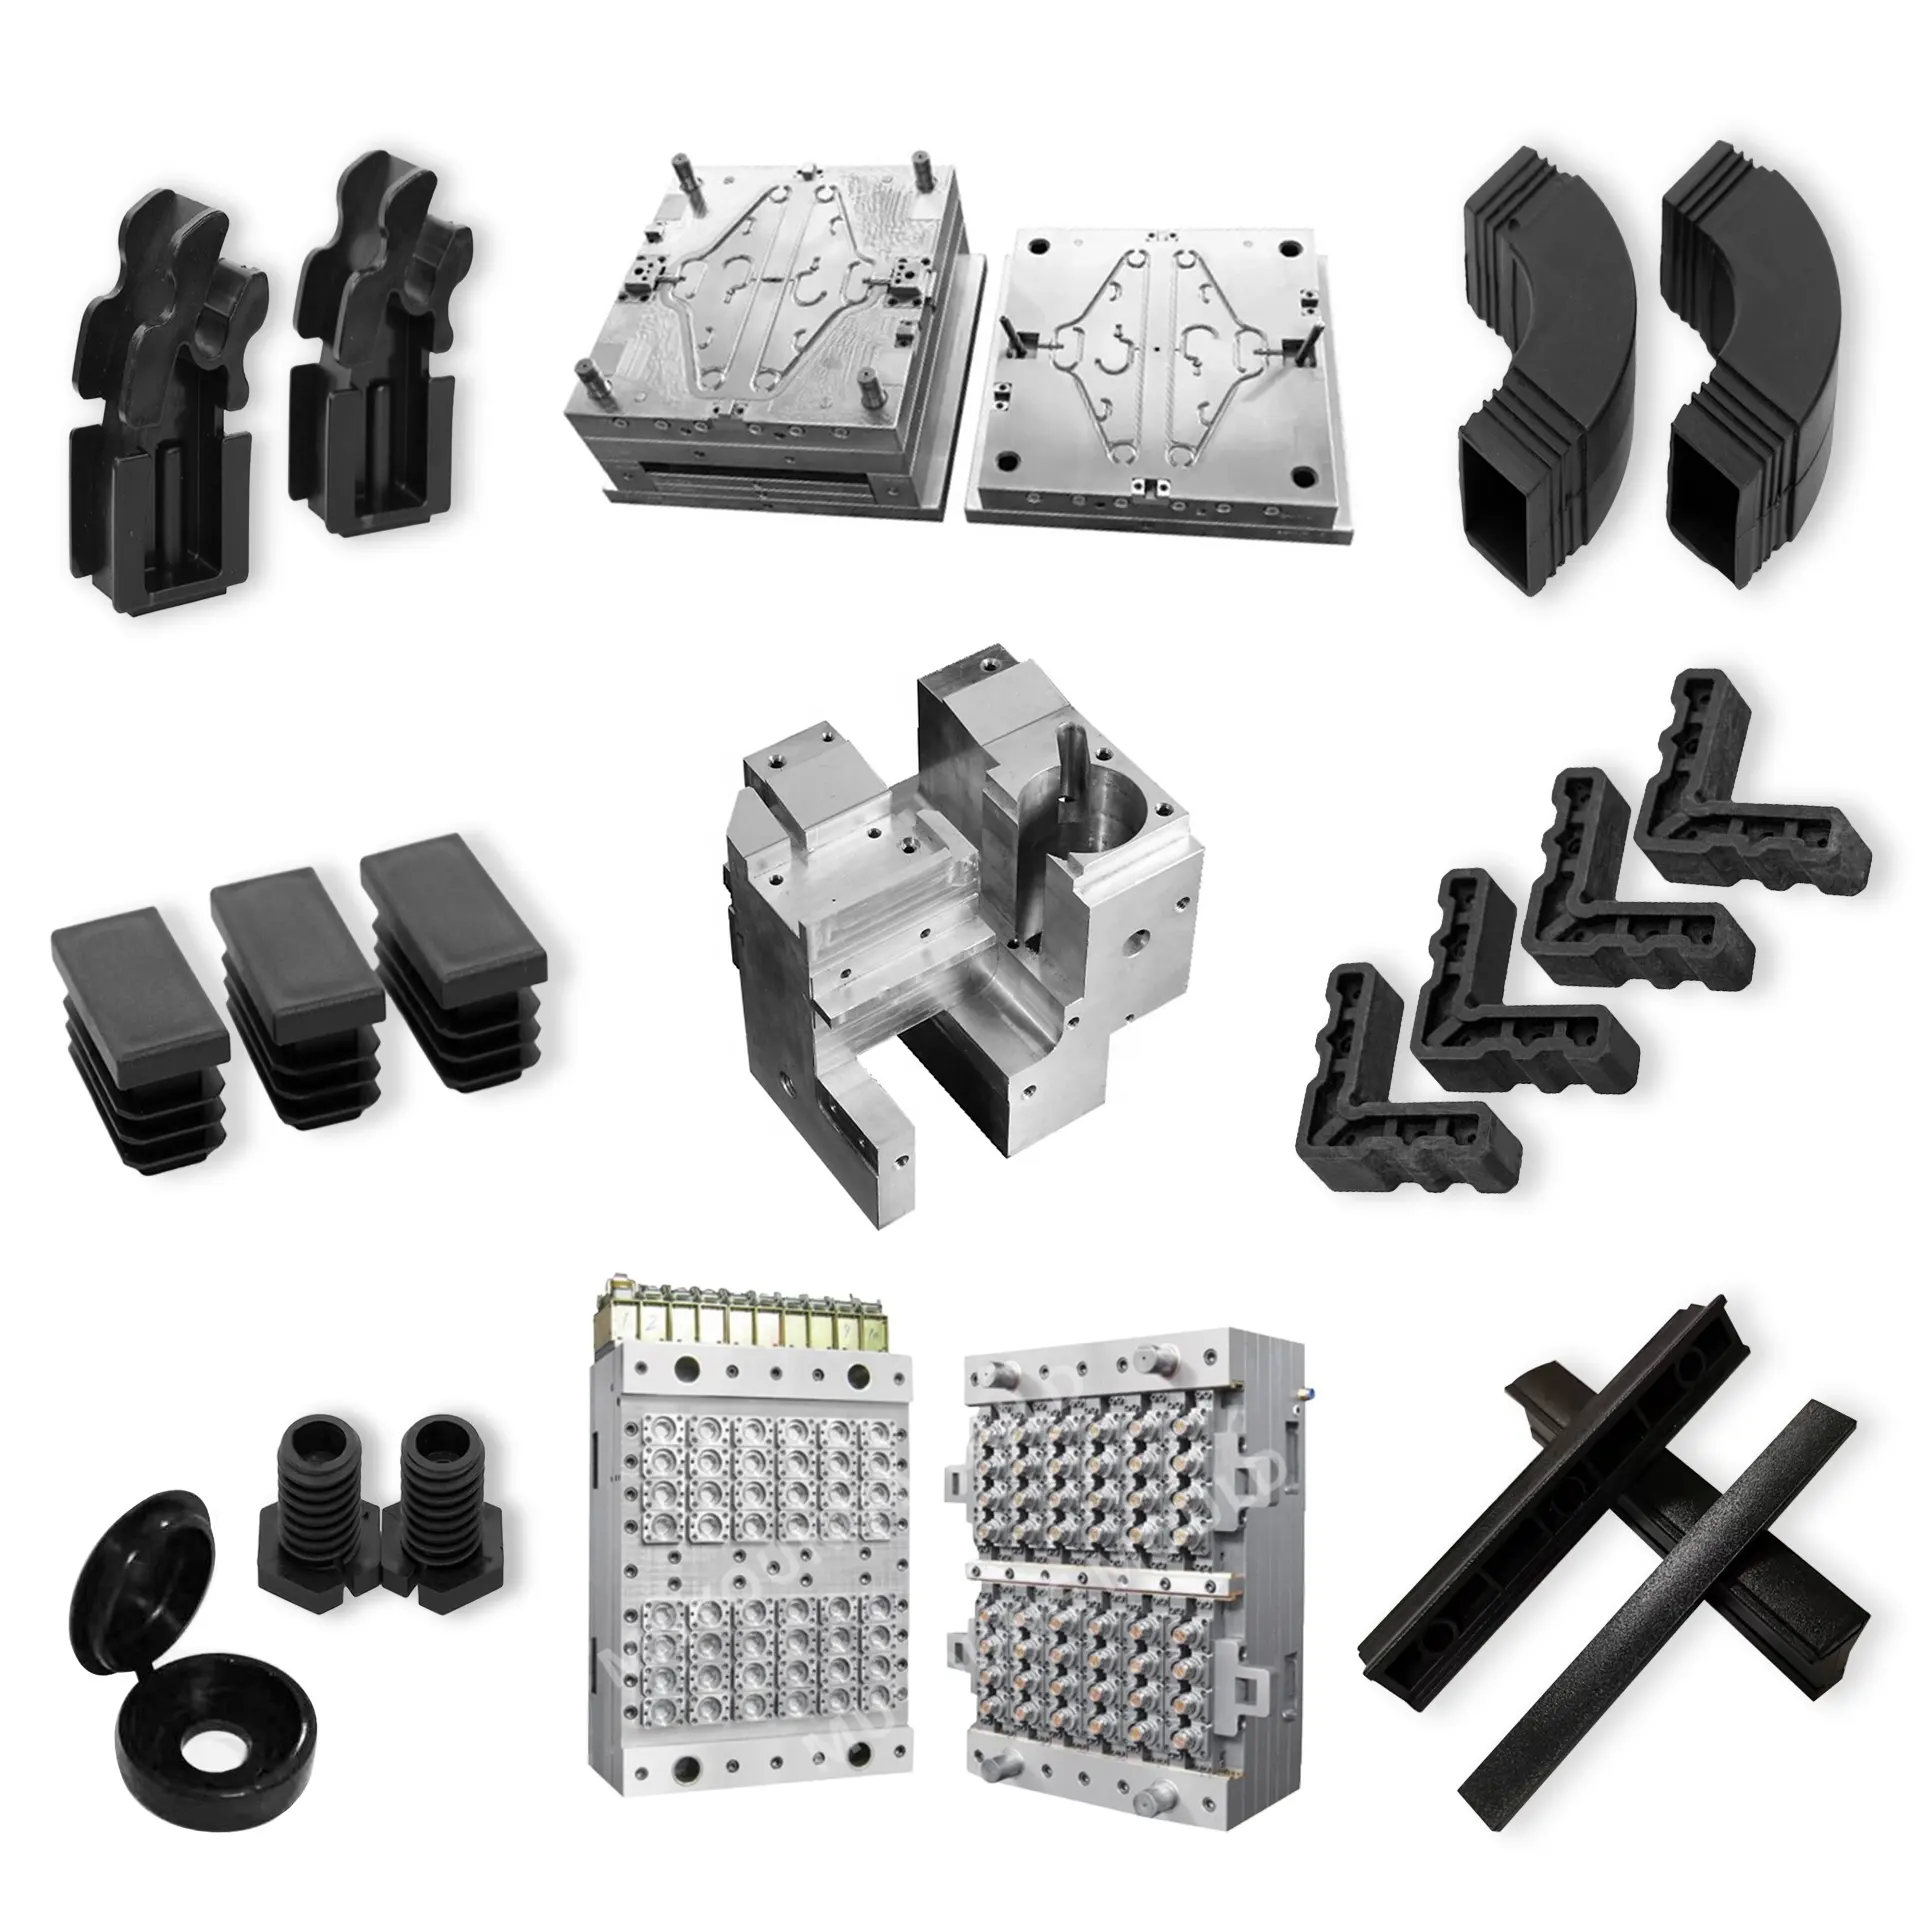 OEM ODM personalizado pequeñas piezas de herramientas de moldeo por inyección de plástico productos de moldeo por inyección de plástico y Servicio de Fabricación